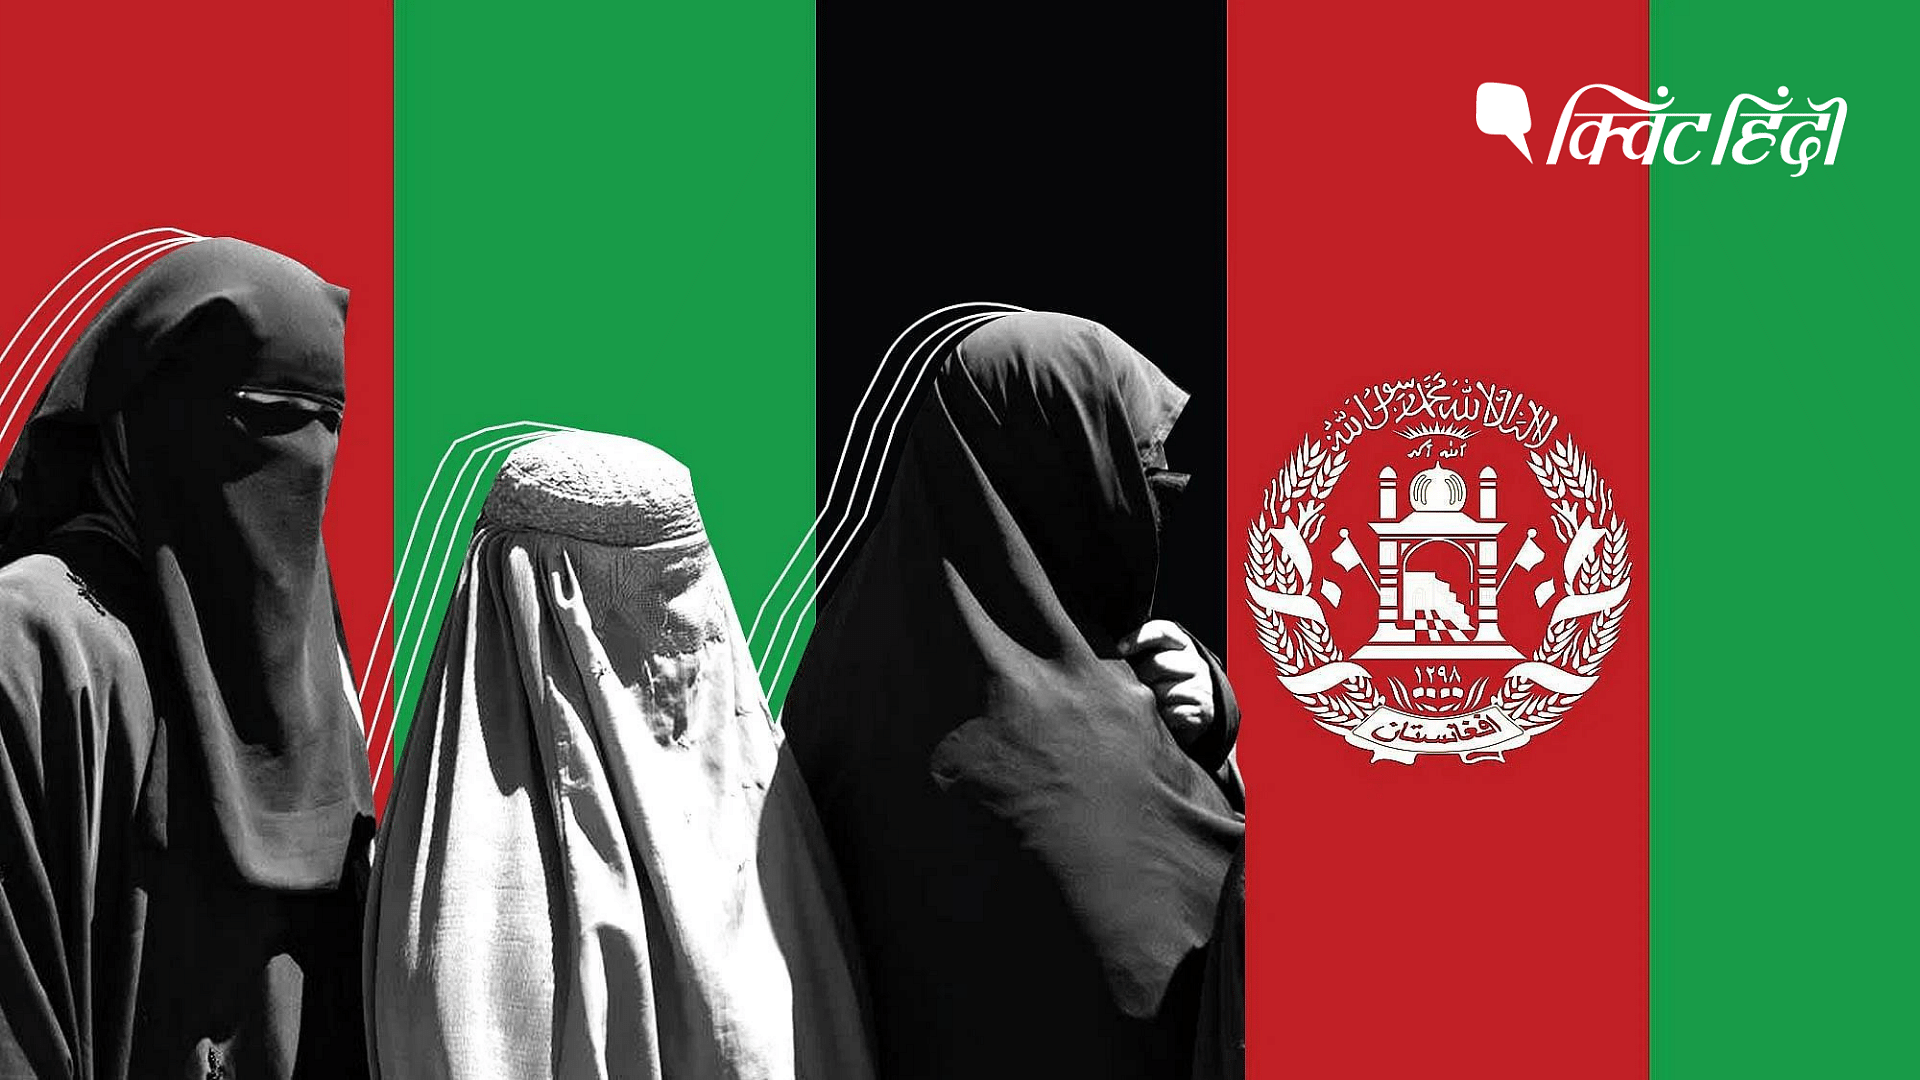 <div class="paragraphs"><p>तालिबान की सरकार में कहां पहुंचा अफगानिस्तान, क्या है महिलाओं की स्थिति?</p></div>